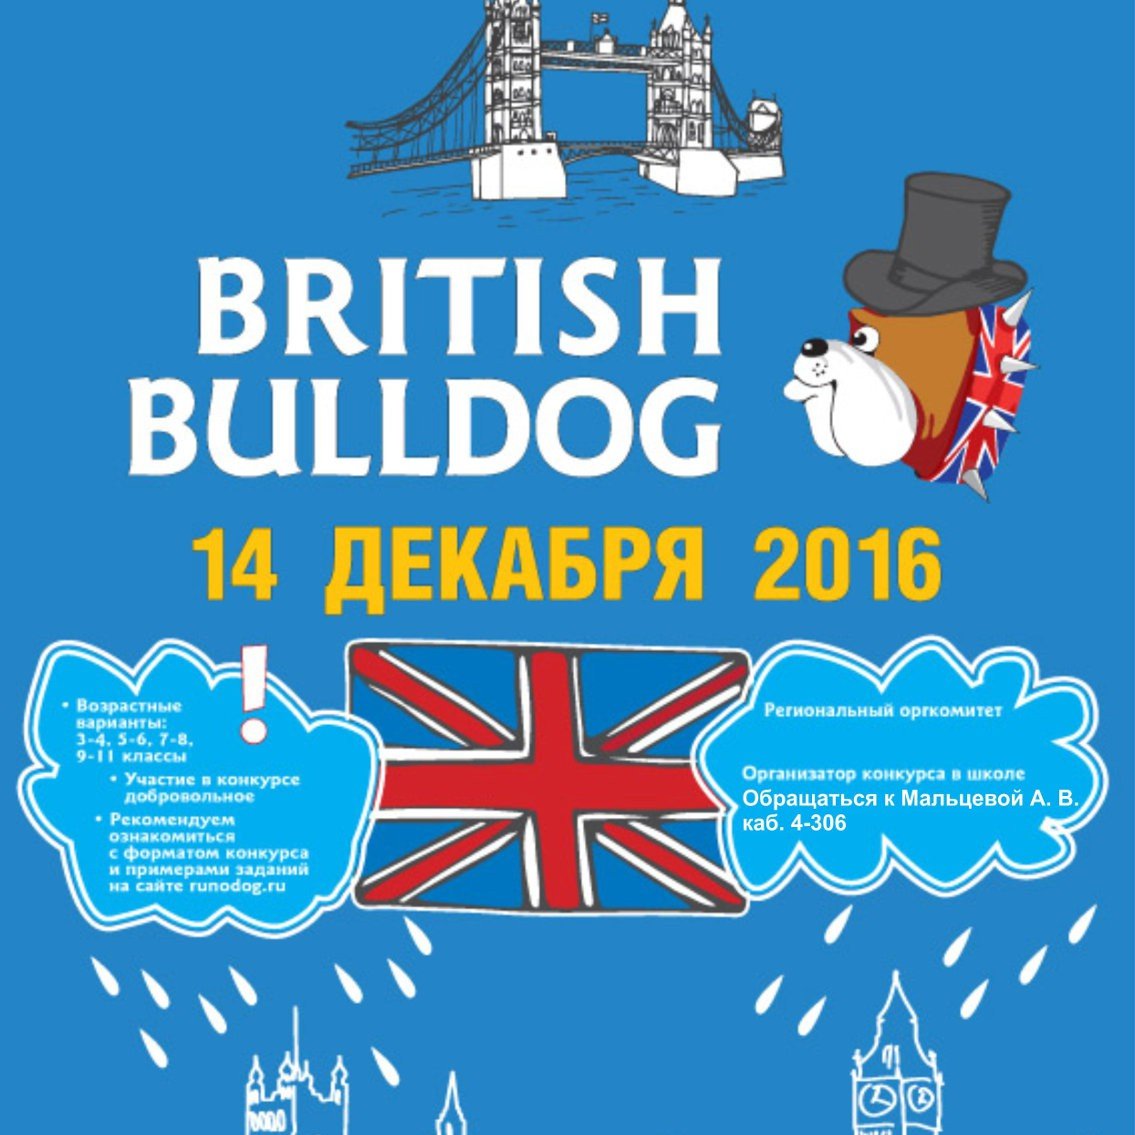 Конкурсы англ язык. British Bulldog (британский бульдог). Британский бульдог конкурс. British Bulldog конкурс по английскому.